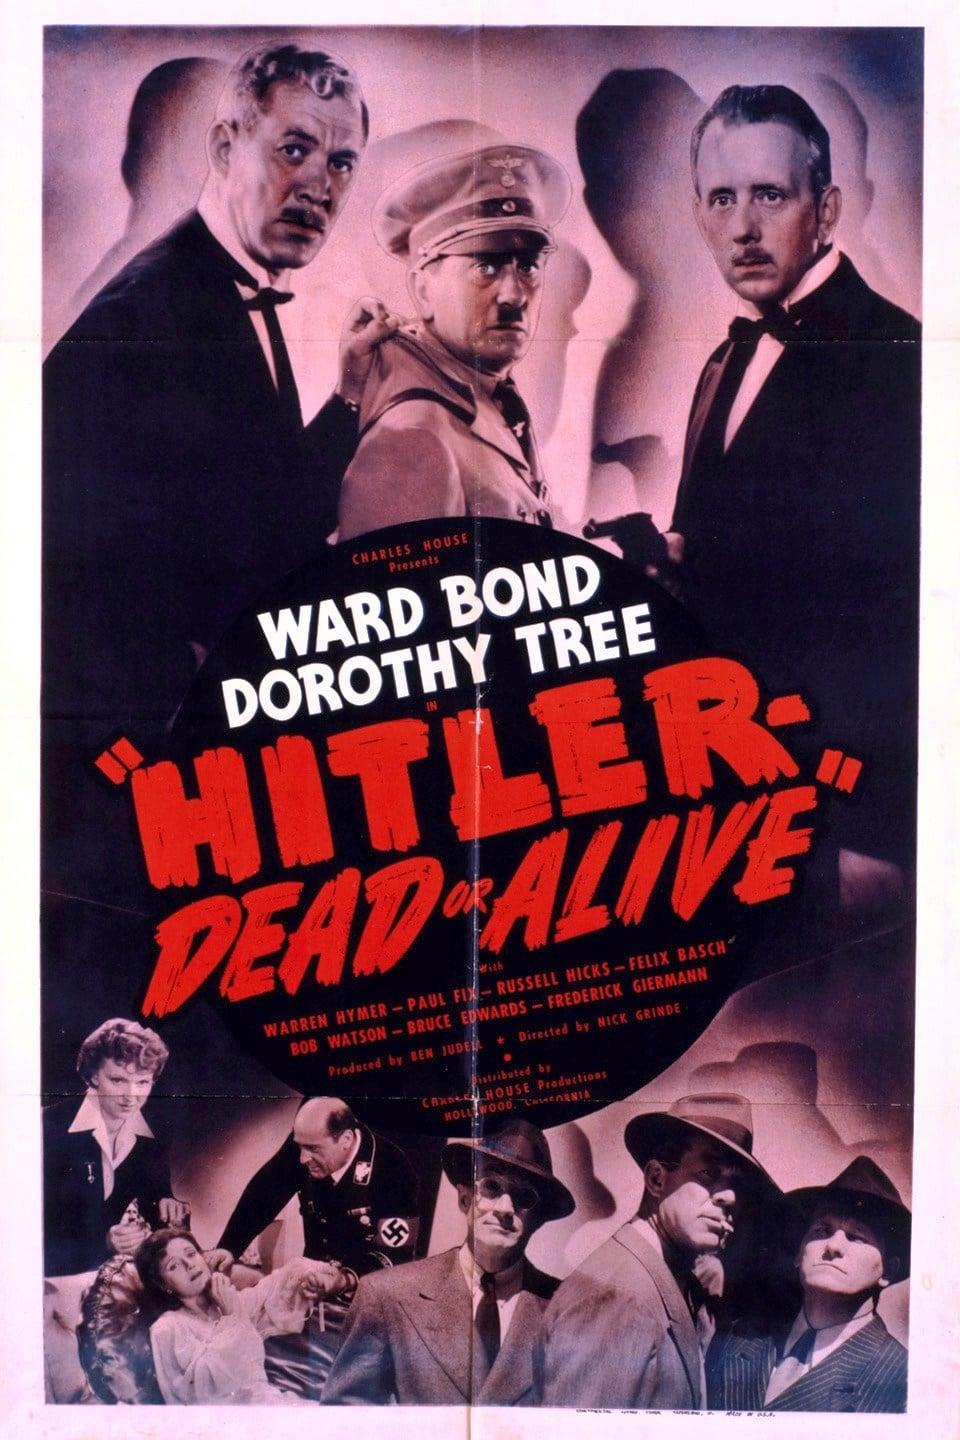 Hitler- Dead or Alive poster